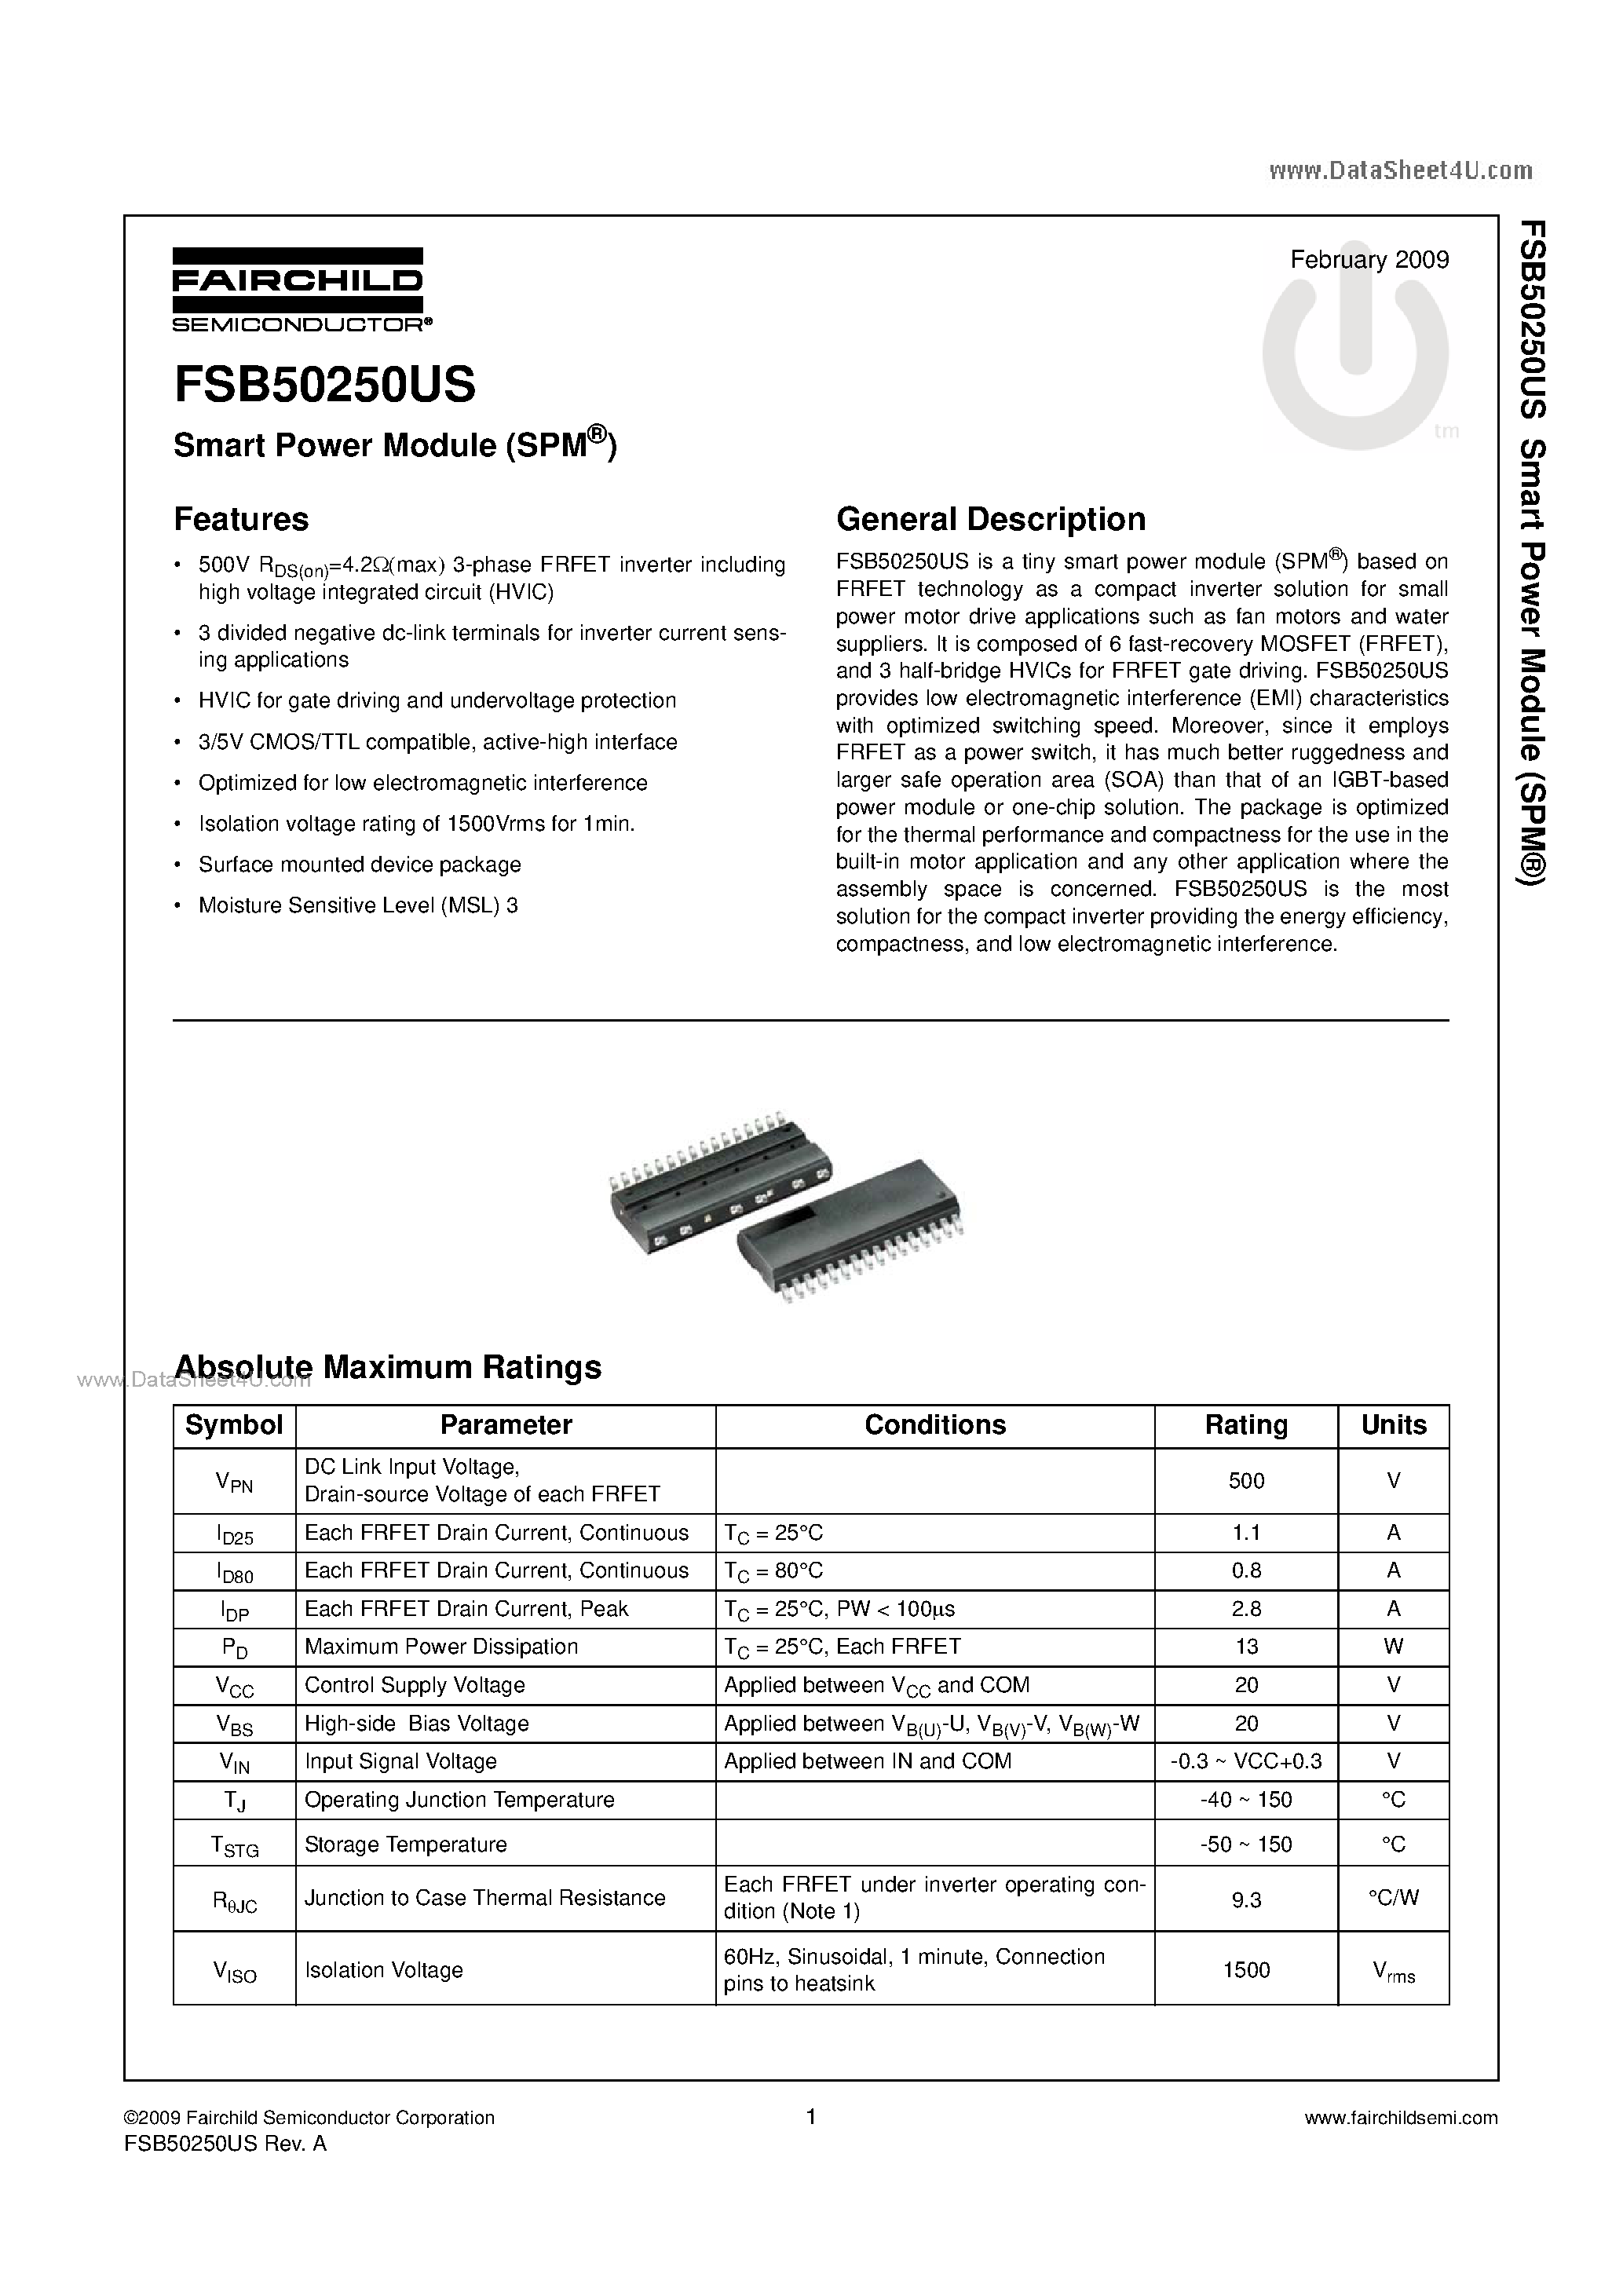 Даташит FSB50250US - Smart Power Module страница 1